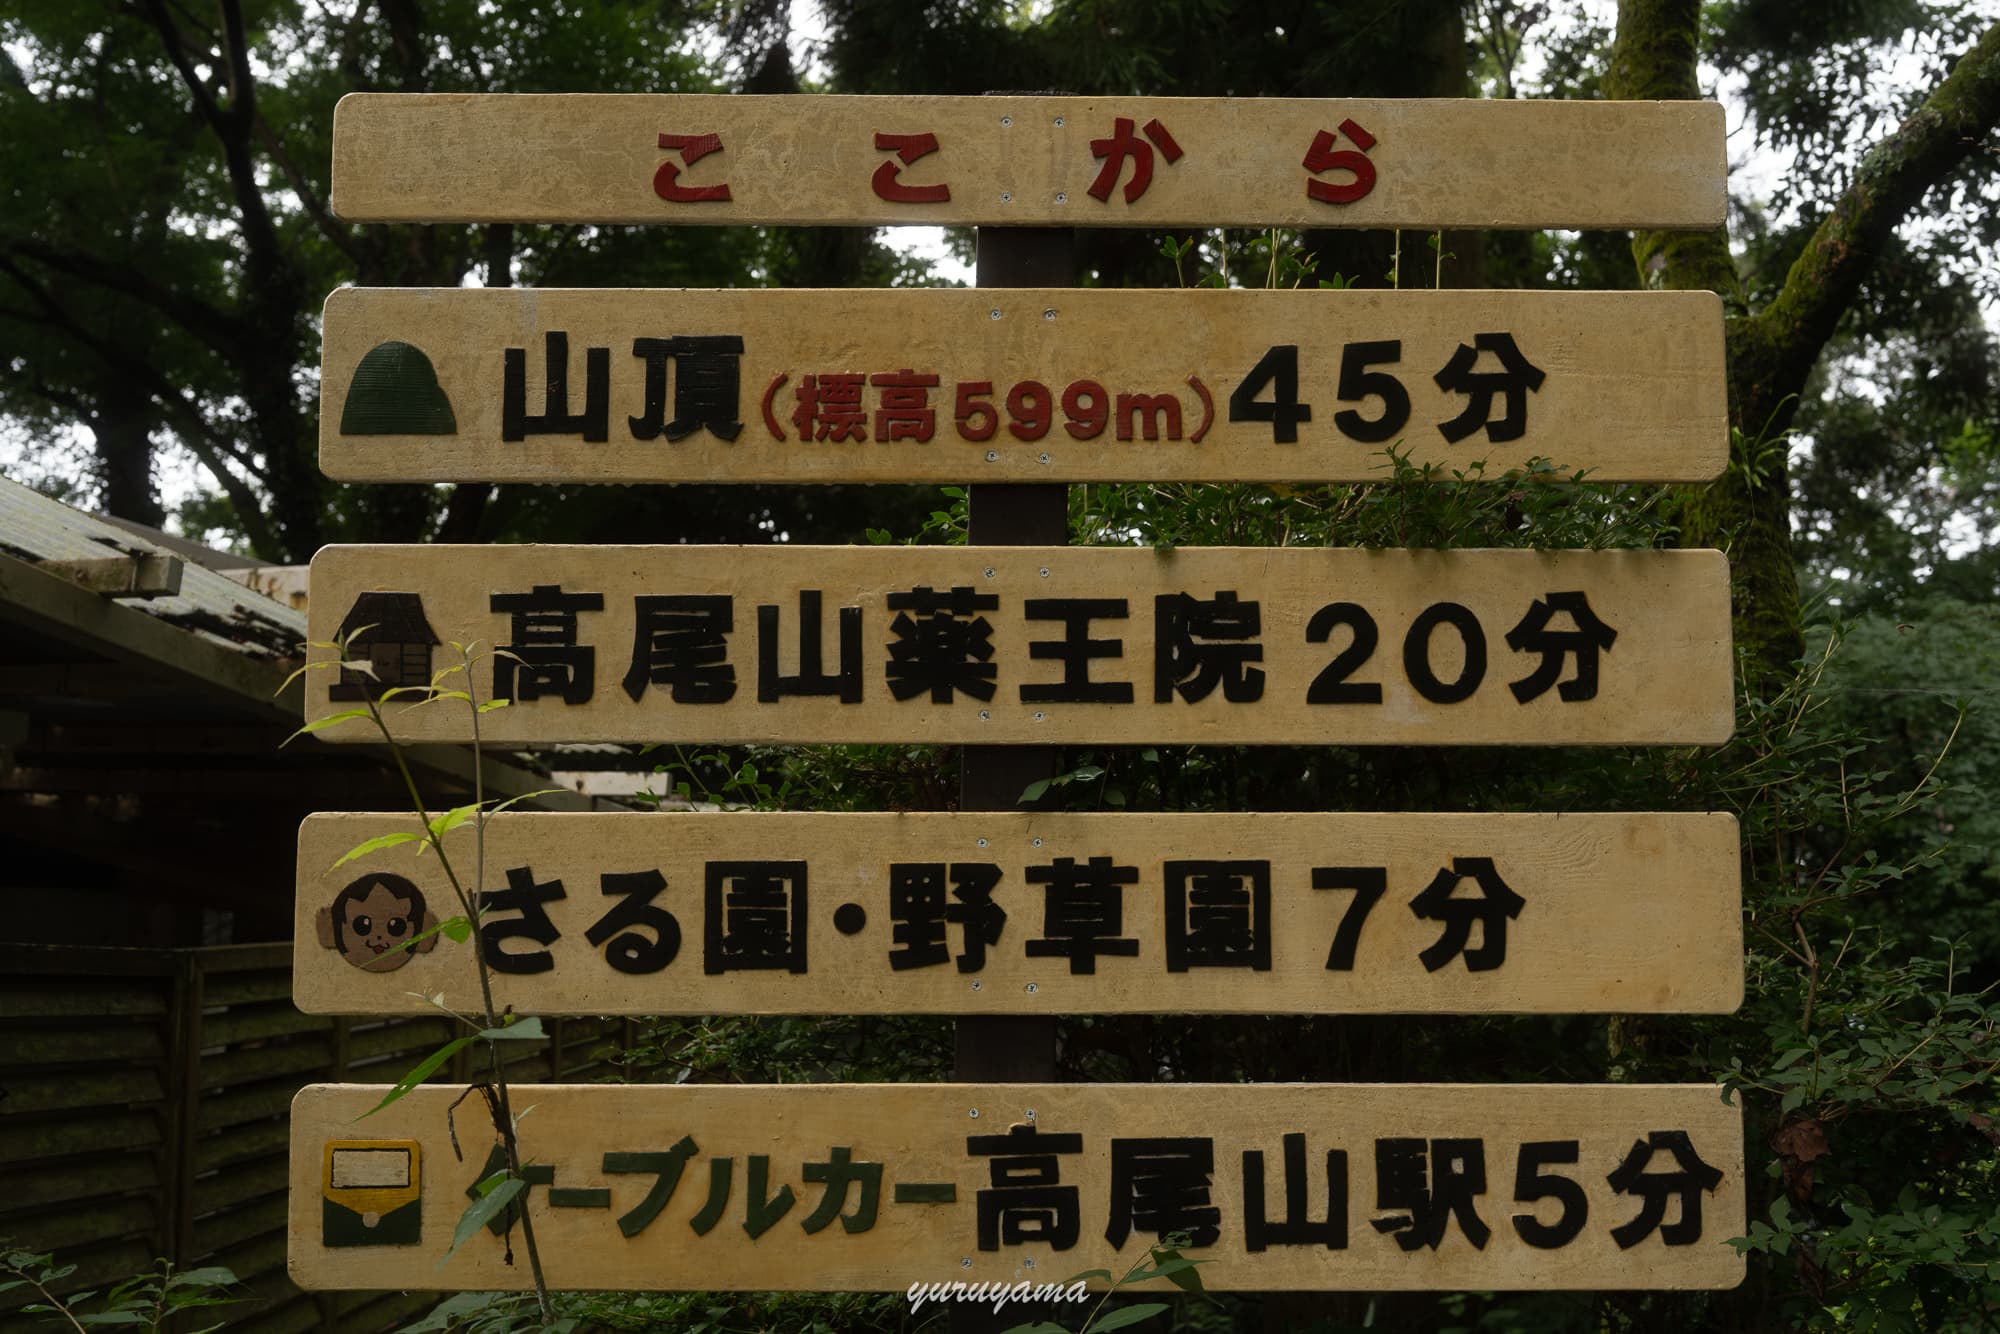 高尾山のルート情報の標識